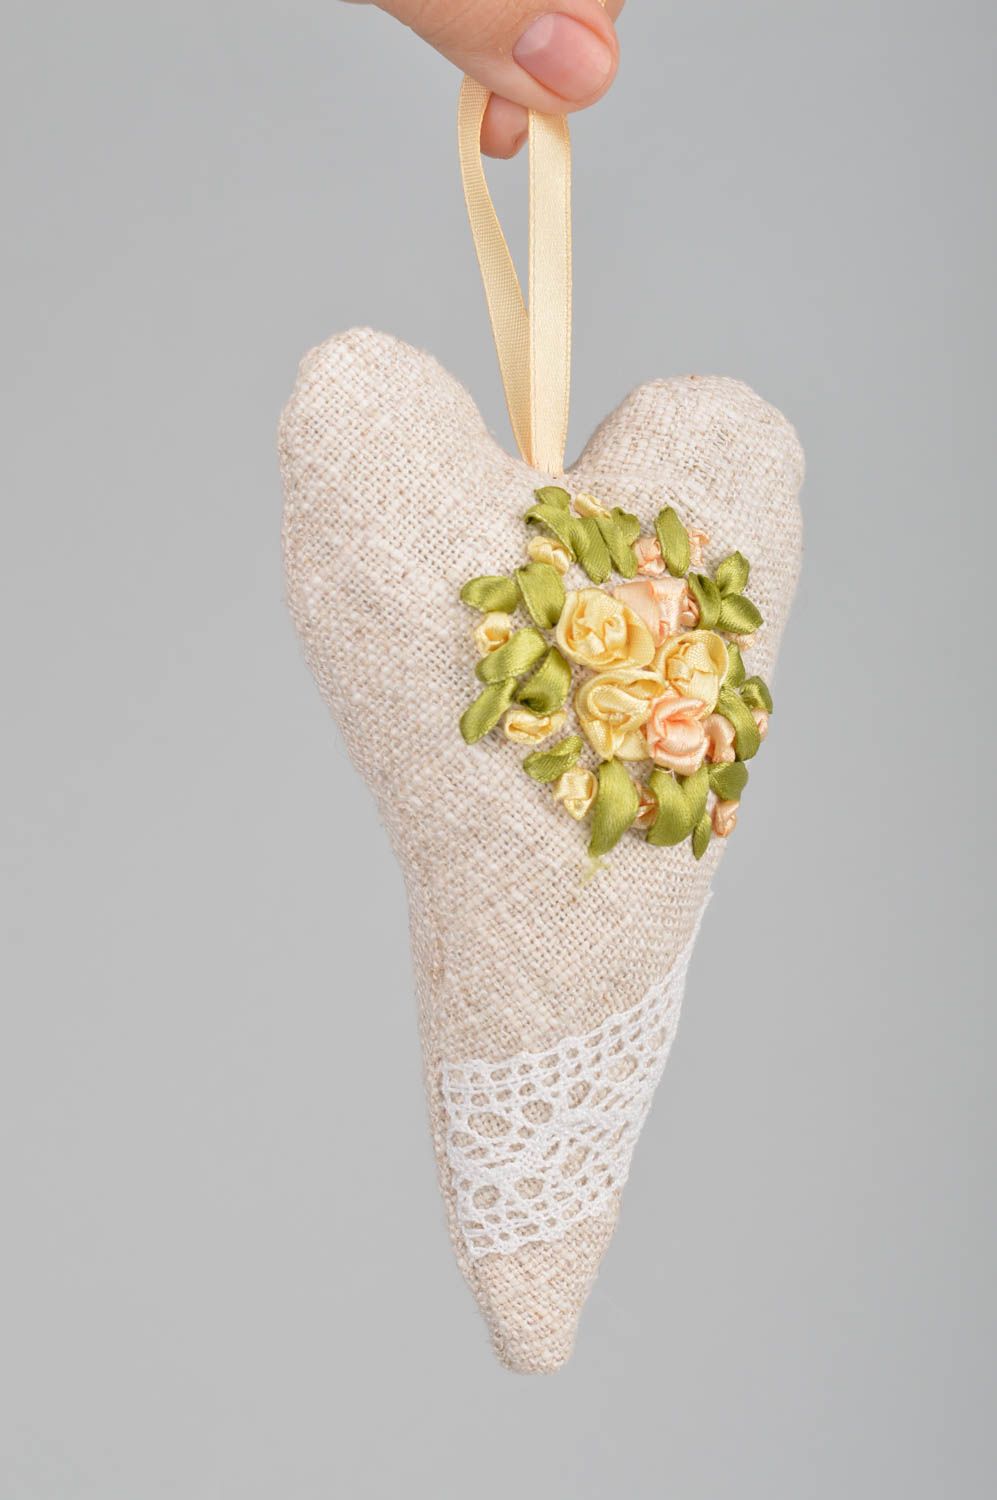 Интерьерная подвеска сердце из льна с вышитыми атласными цветками ручной работы фото 3